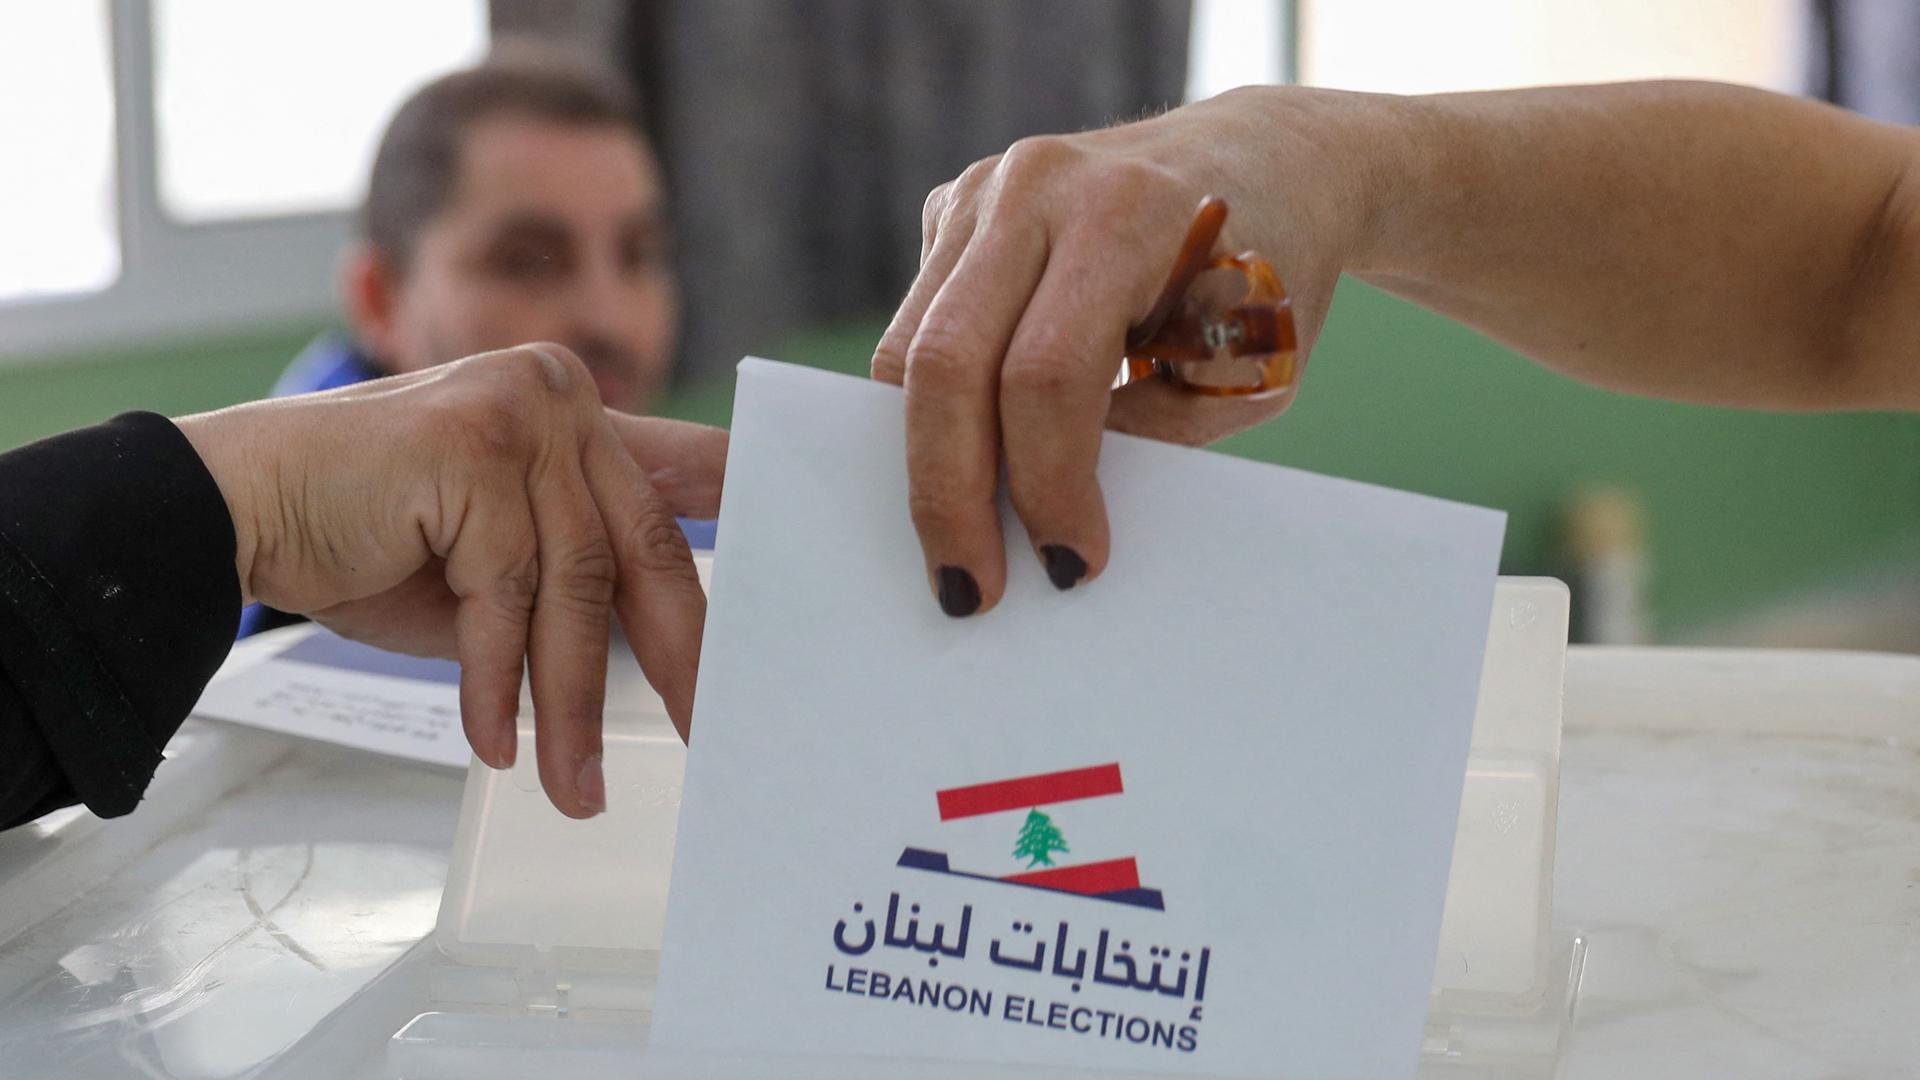 Zu sehen sind Hände, die die Abdeckung einer Wahlurne anheben. Eine Frauenhand wirft einen Wahlzettel ein.